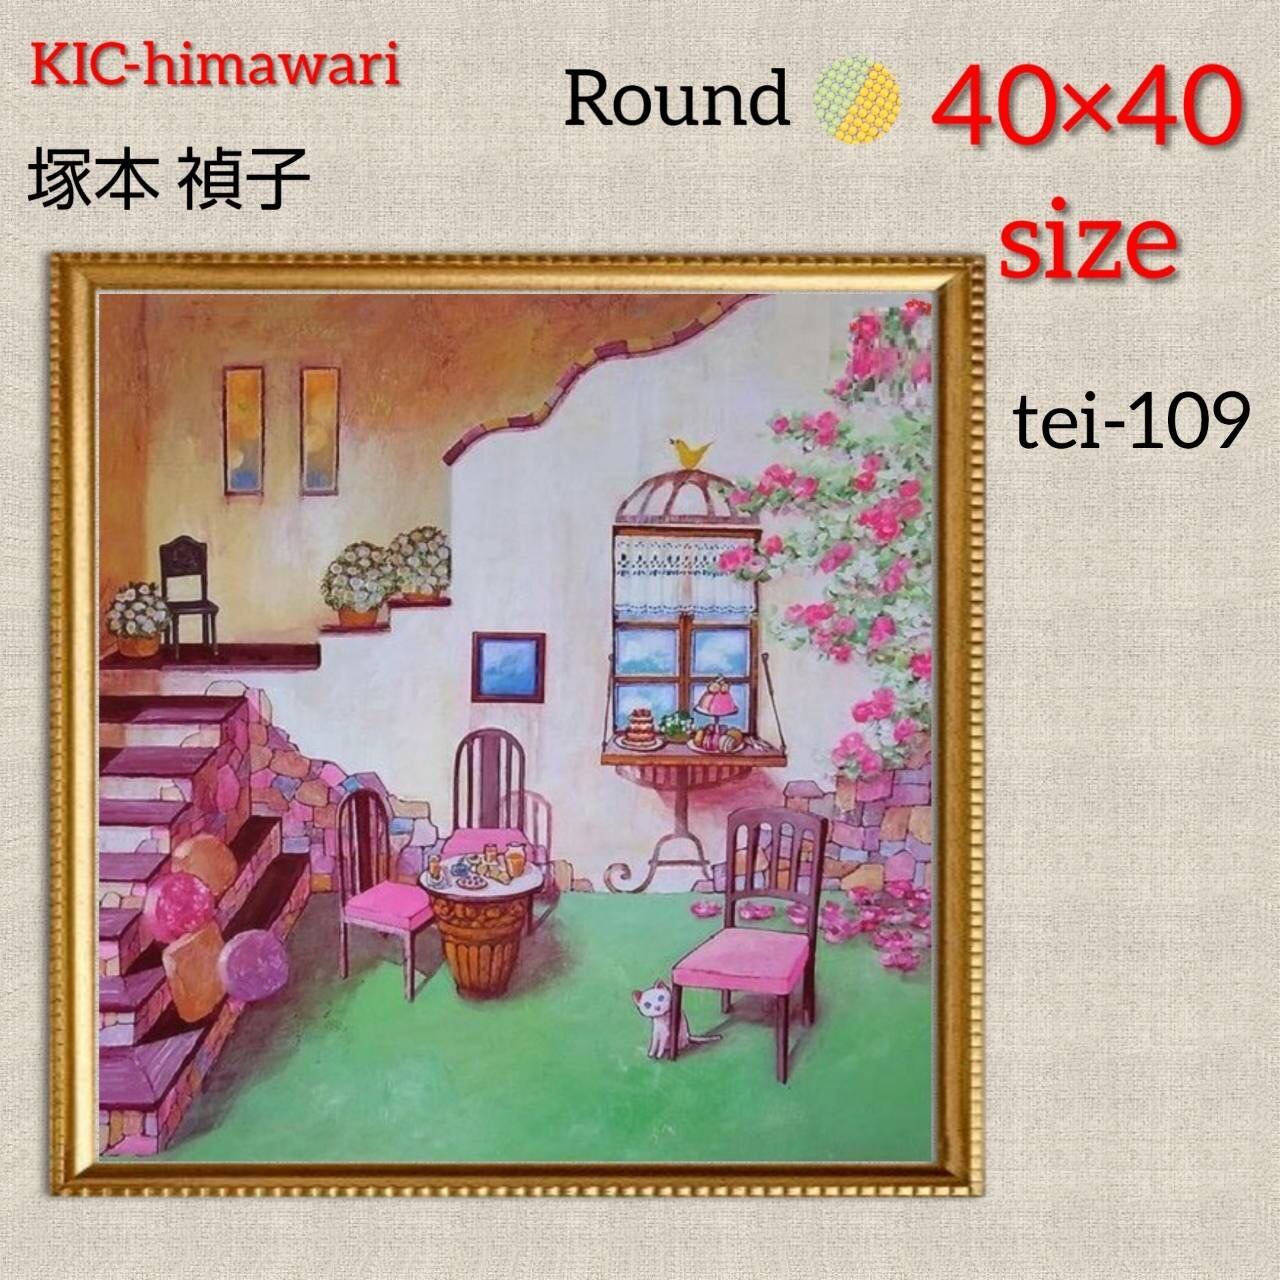 40×40サイズ 丸型ビーズ【tei-109】 ダイヤモンドアート